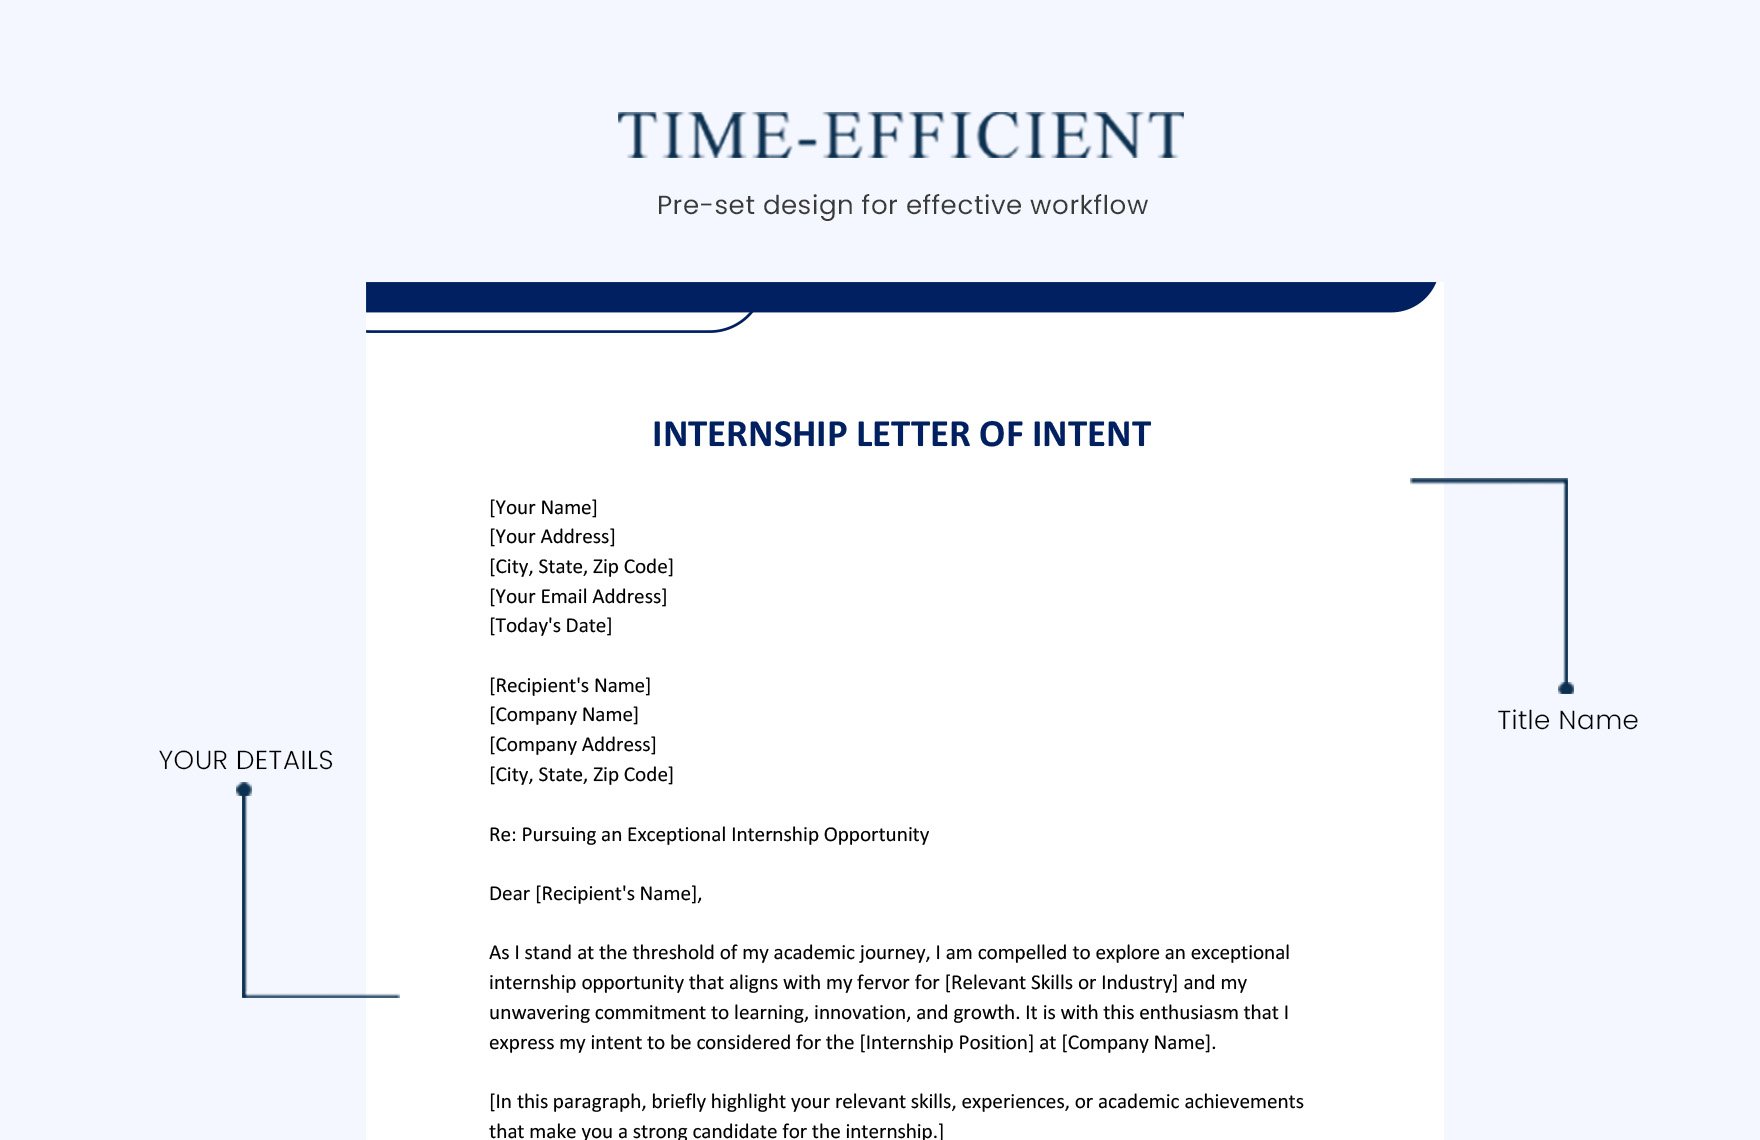 Internship Letter of Intent